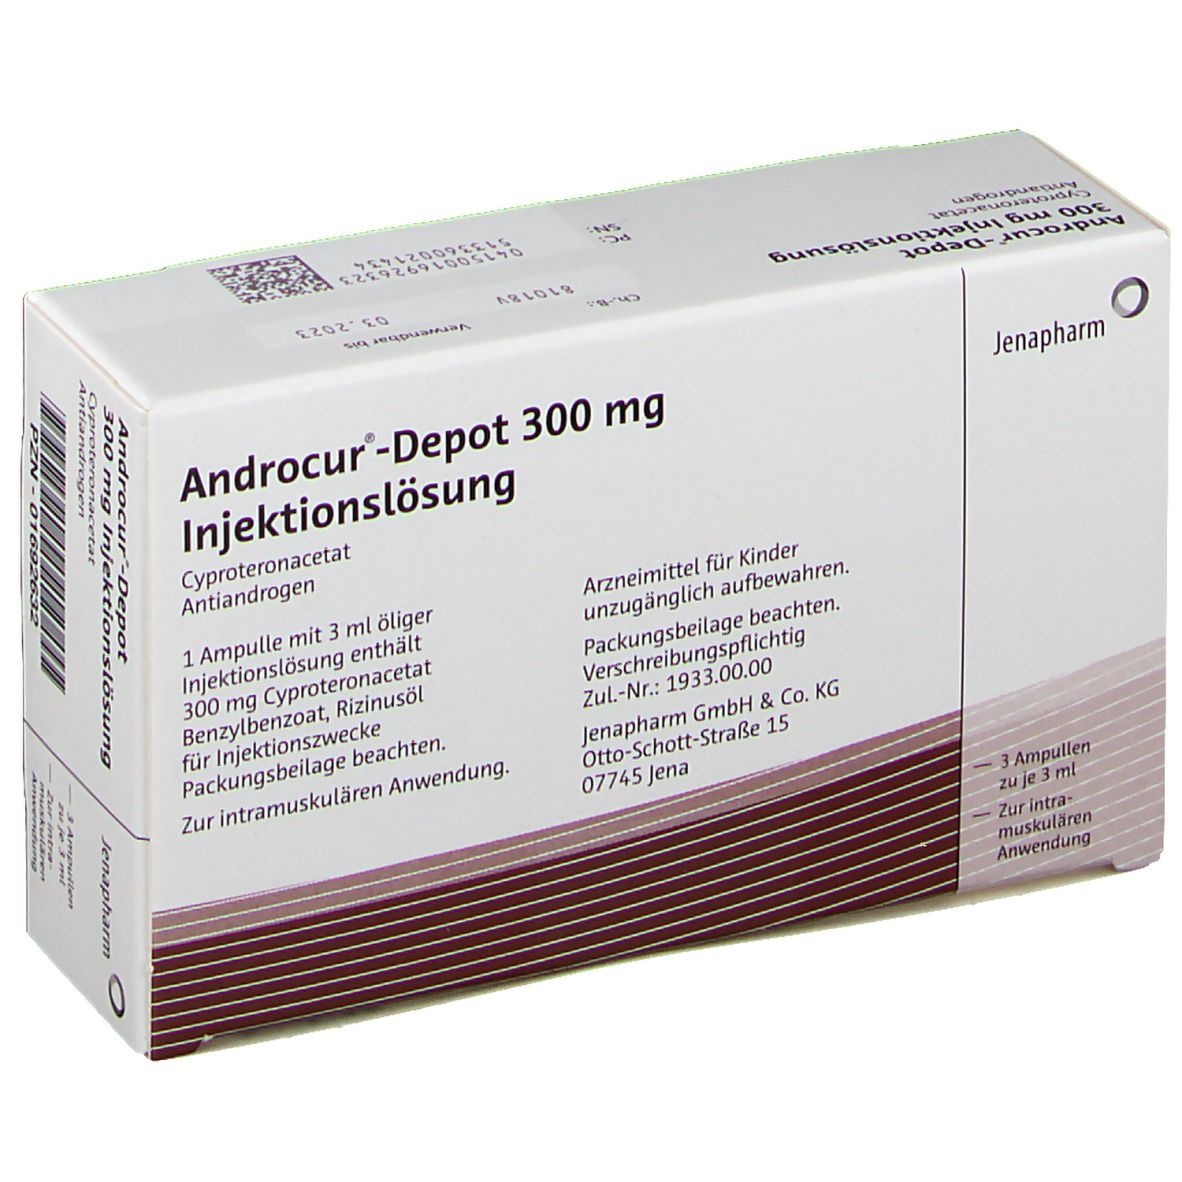 Androcur®-Depot 300 mg